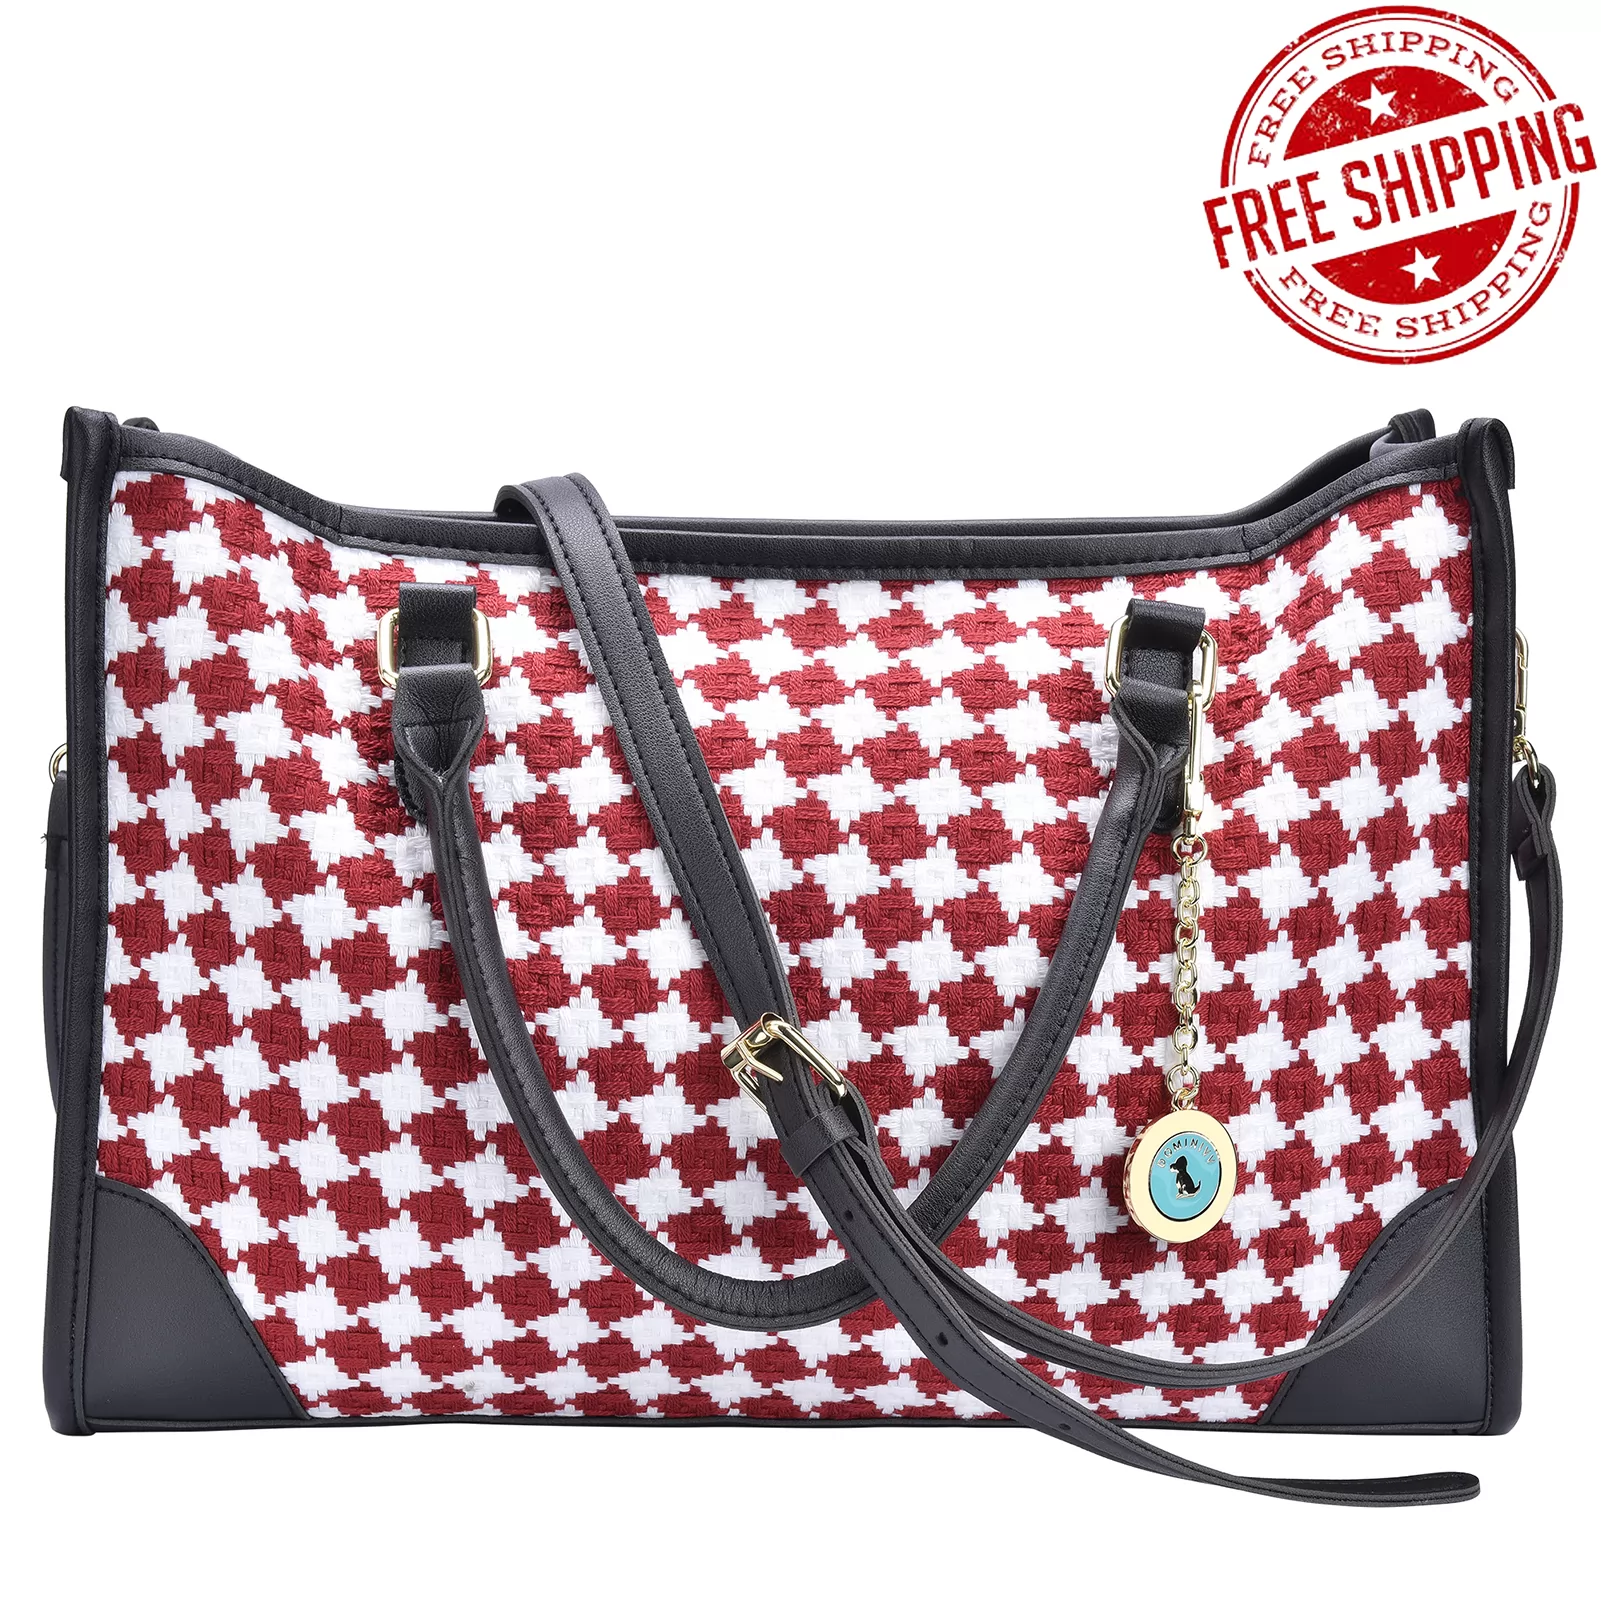 Dominivv Handbag-Tote Bag/Shoulder Bag-Red Damier Grain